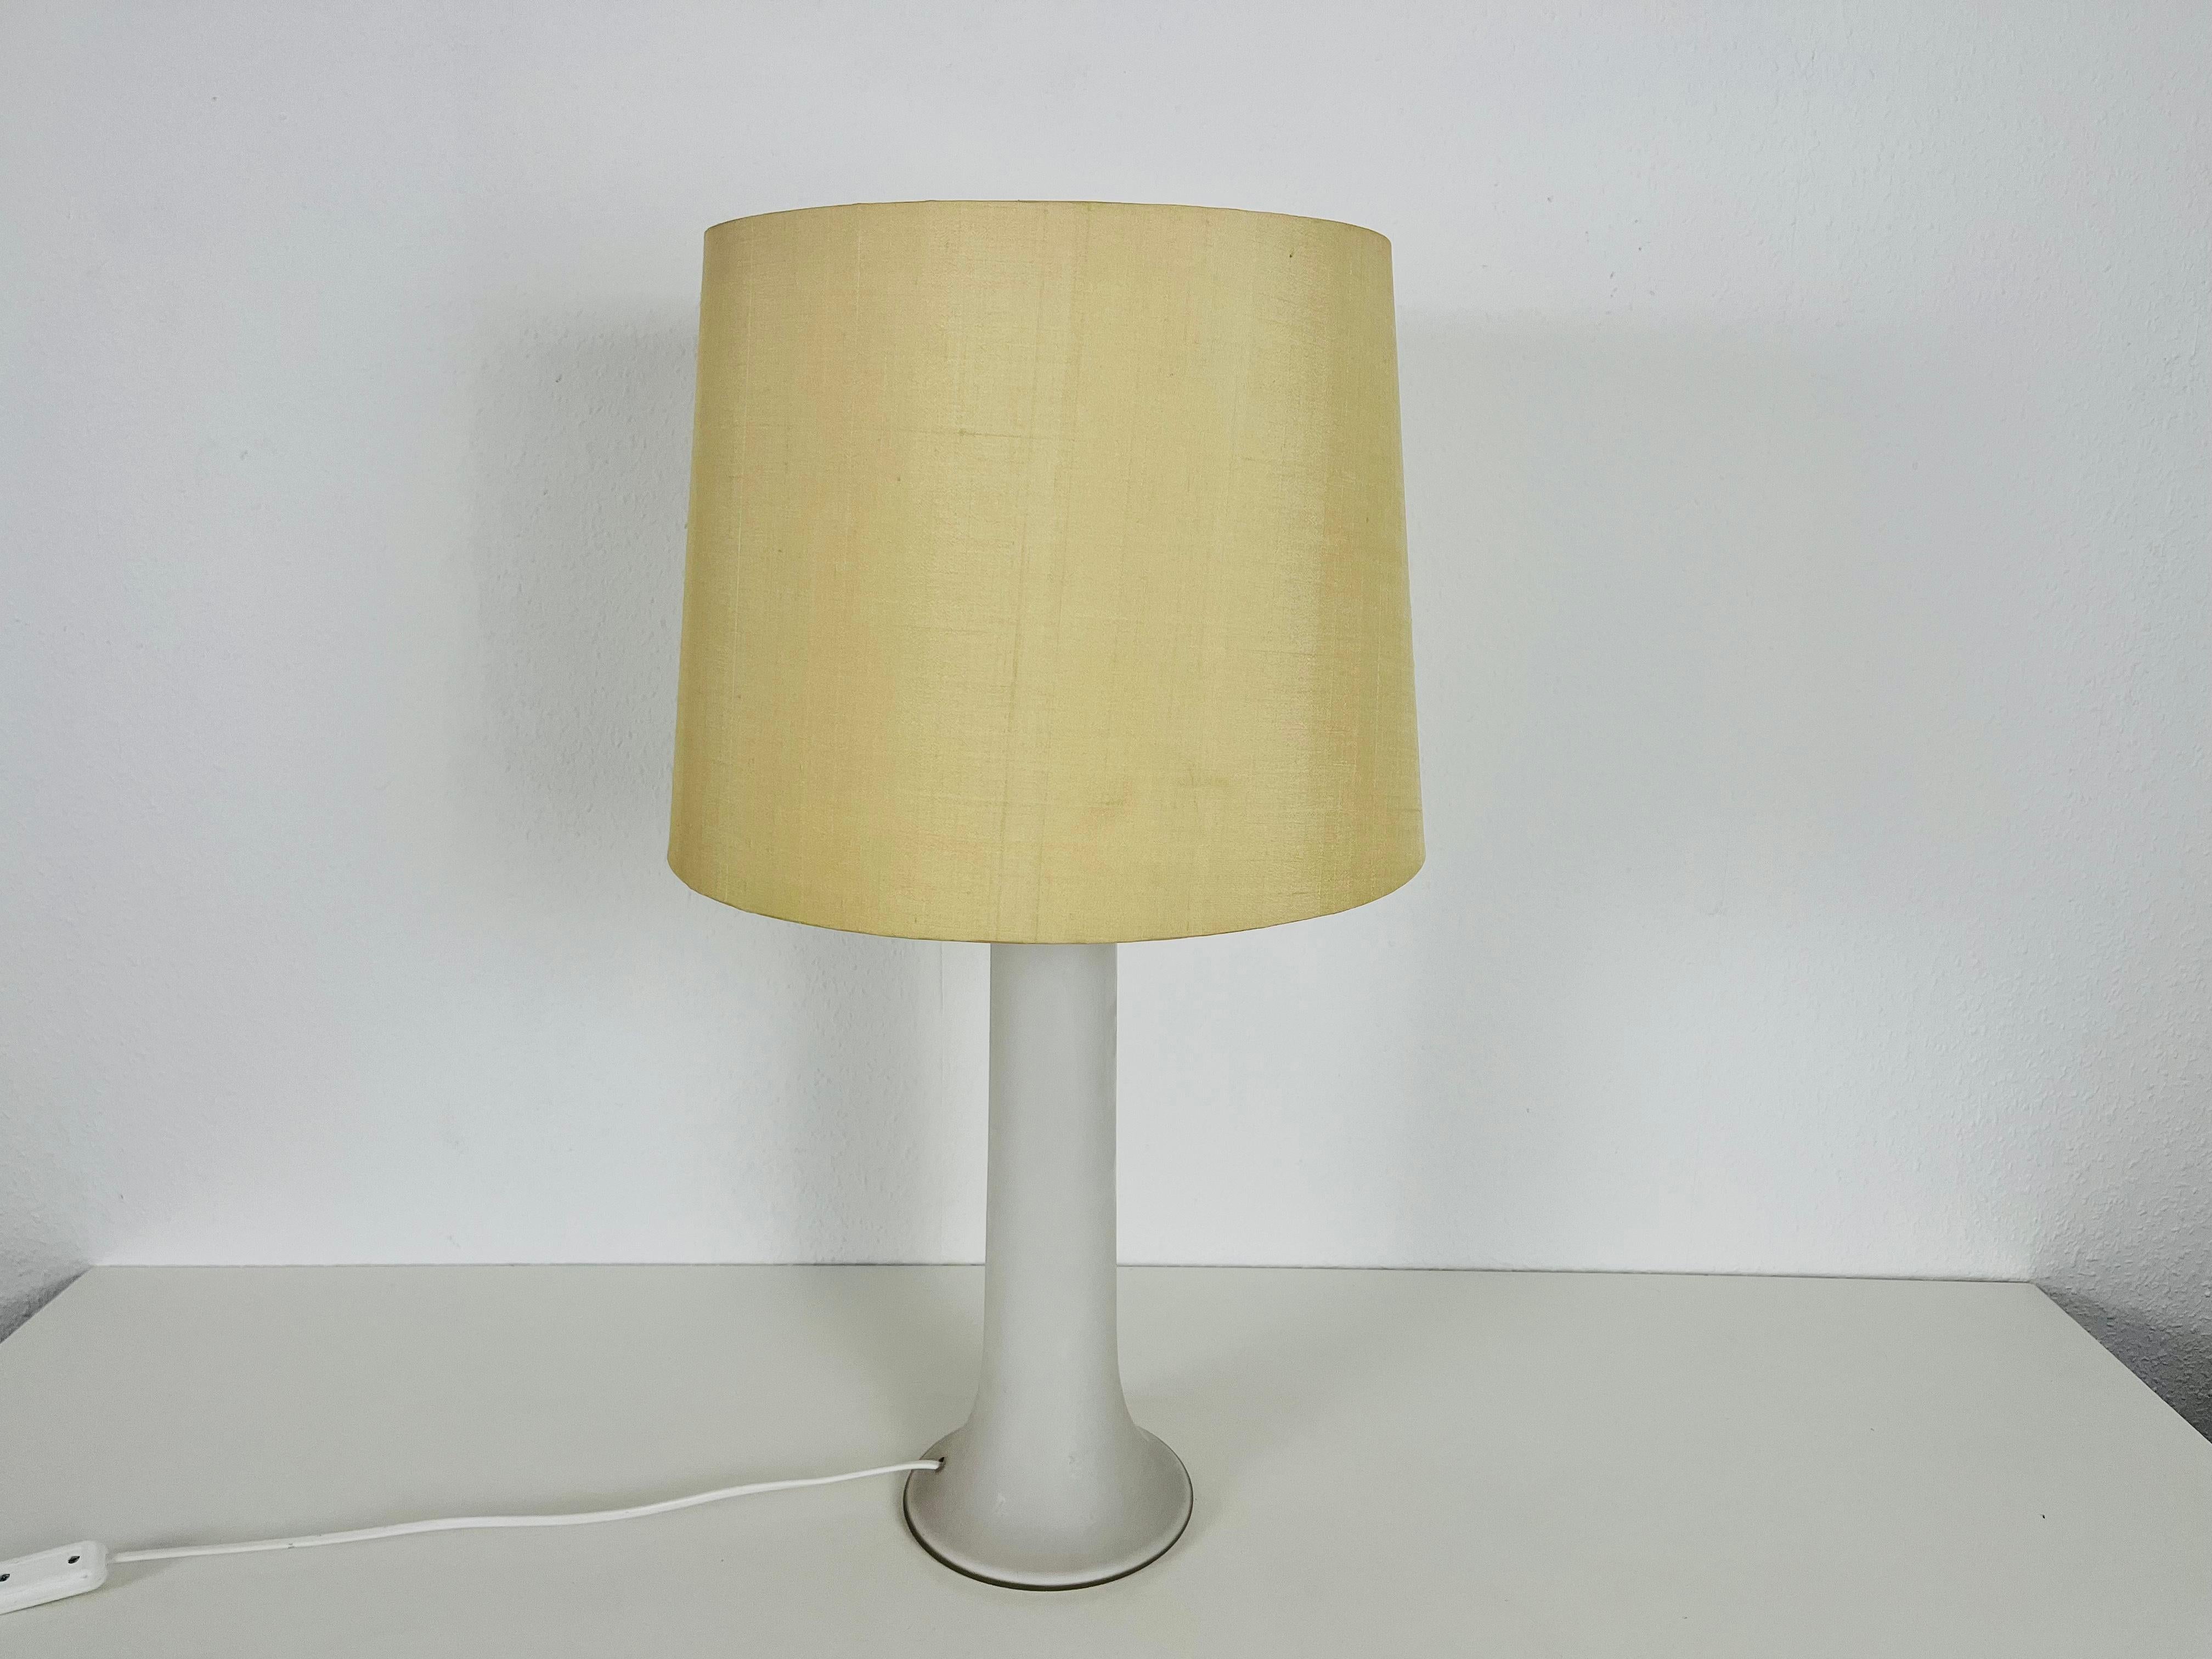 Eine schöne große Tischlampe aus den 1960er Jahren von Luxus Sweden. Der Sockel ist aus weißem Glas gefertigt. Der Lampenschirm ist aus Stoff gefertigt und hat eine beige Farbe.

Die Leuchte benötigt eine E27-Glühbirne. Funktioniert sowohl mit